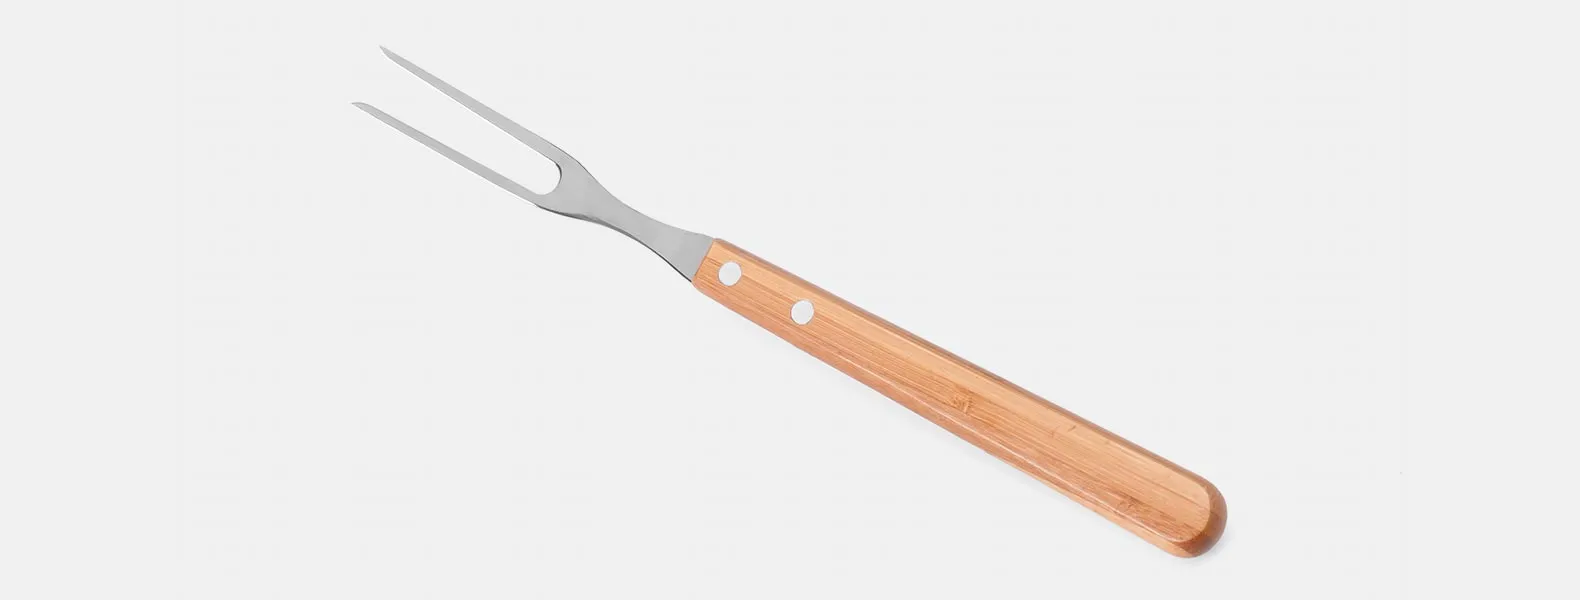 Conjunto composto por seis peças com cabos em bambu e lâminas em aço Inox com rebites resistentes, sendo uma faca 8”, um garfo trinchante, uma faca 5” para desossar, uma faca 4” de frutas, uma faca Santoku 7” e uma faca 7” para pão. Estão organizados em fita elástica preta no interior de um estojo.